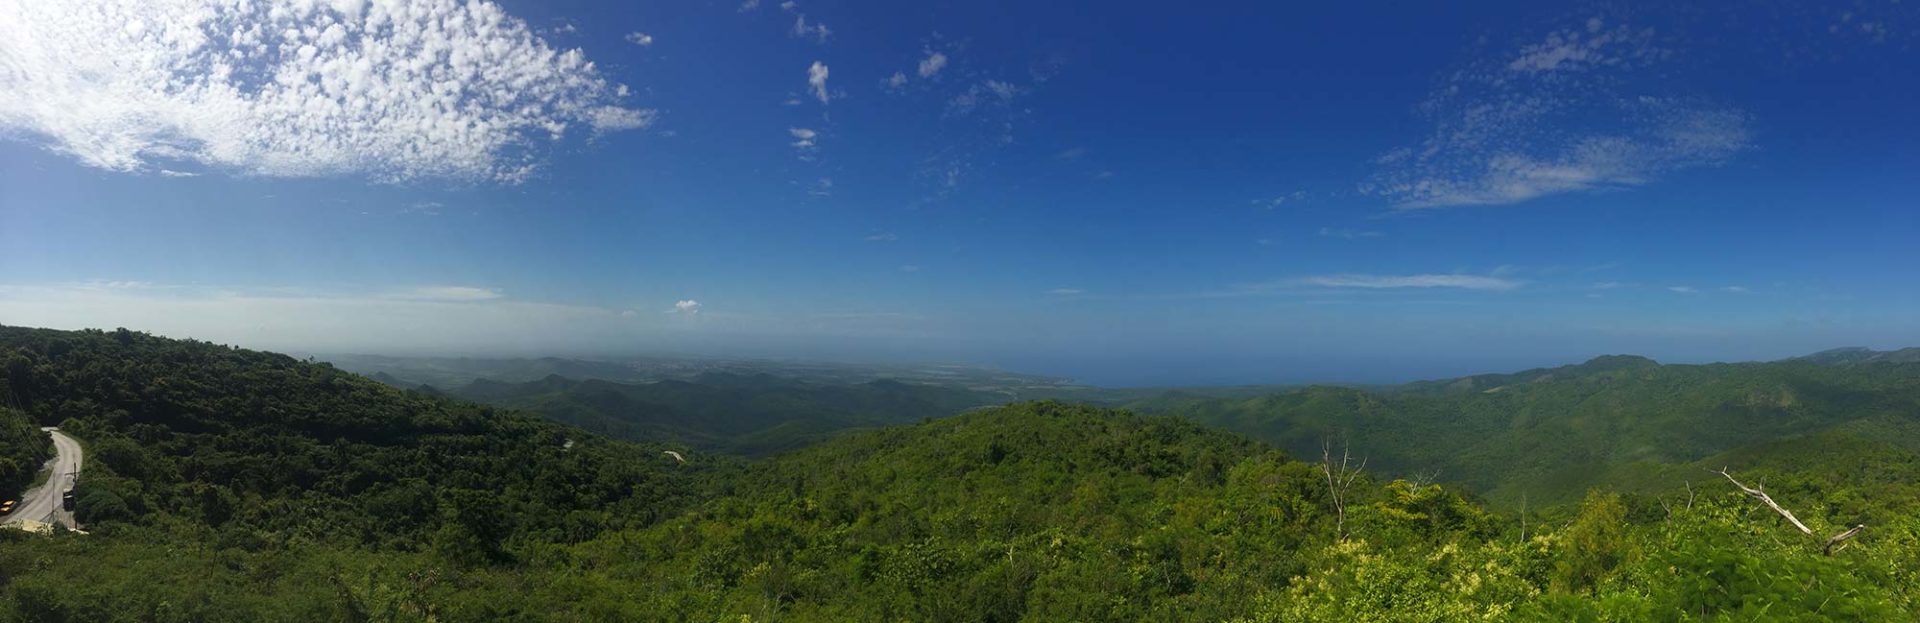 Panoramabilde av et grønt, rullende landskap i Cuba